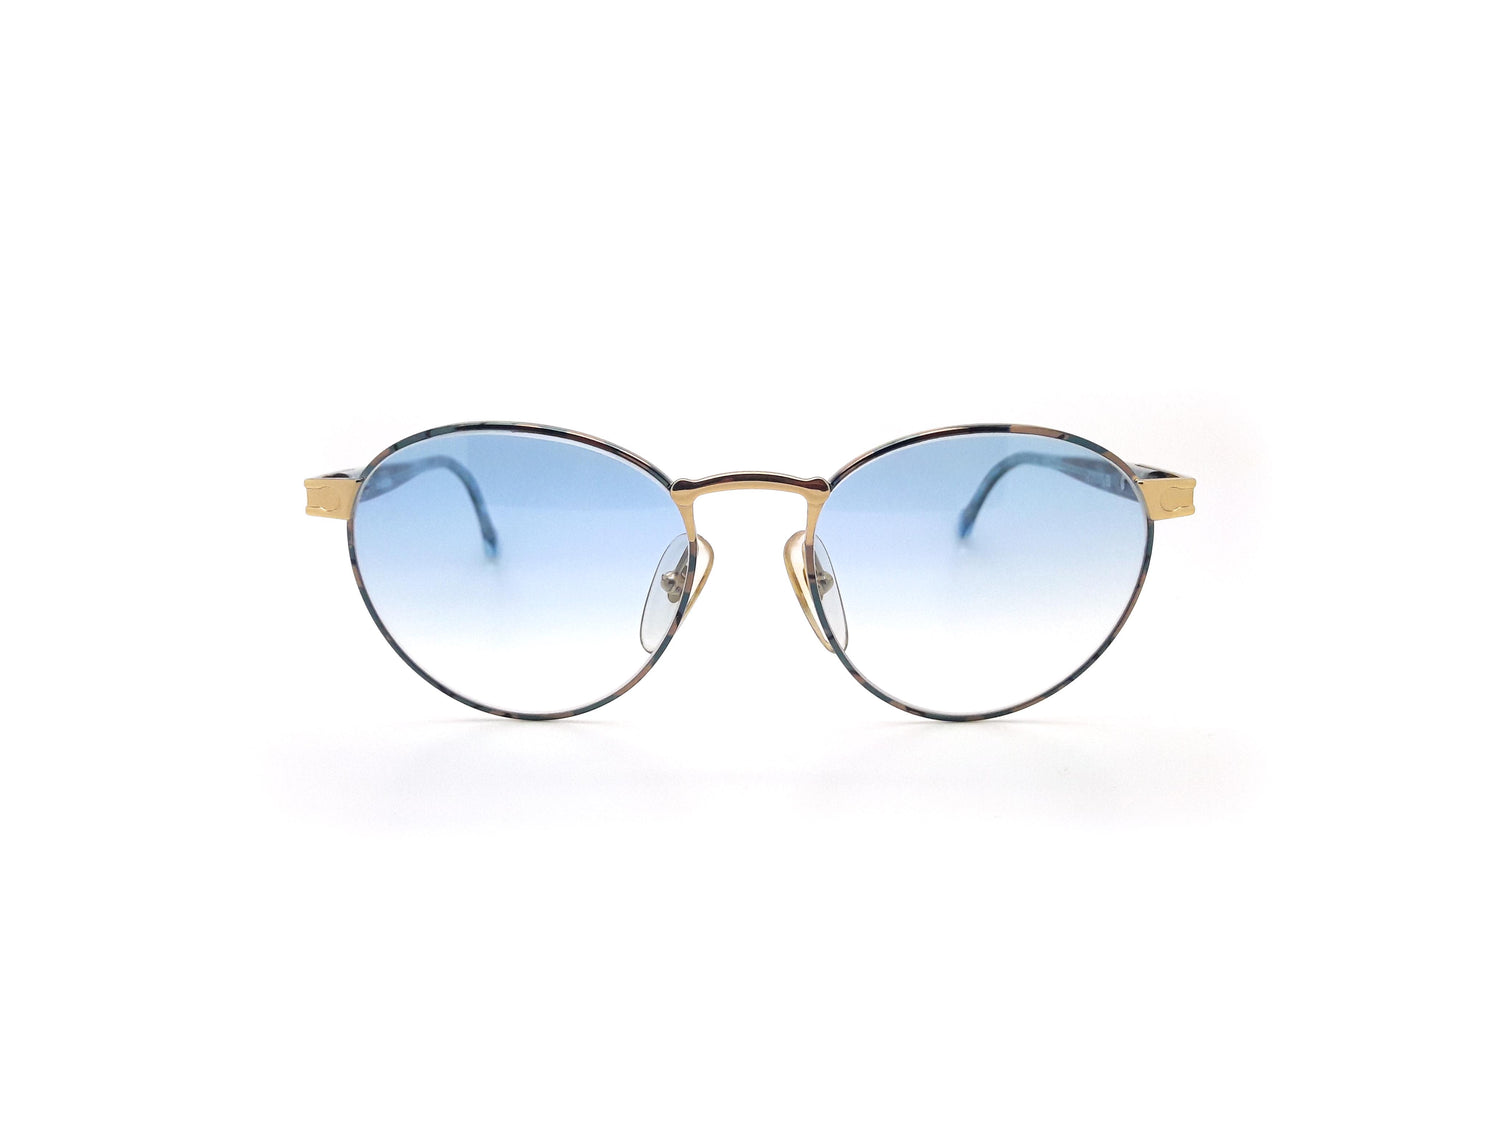 Hugo Boss by Carrera 5130 46 Vintage Sunglasses – Ed & Sarna Vintage Eyewear